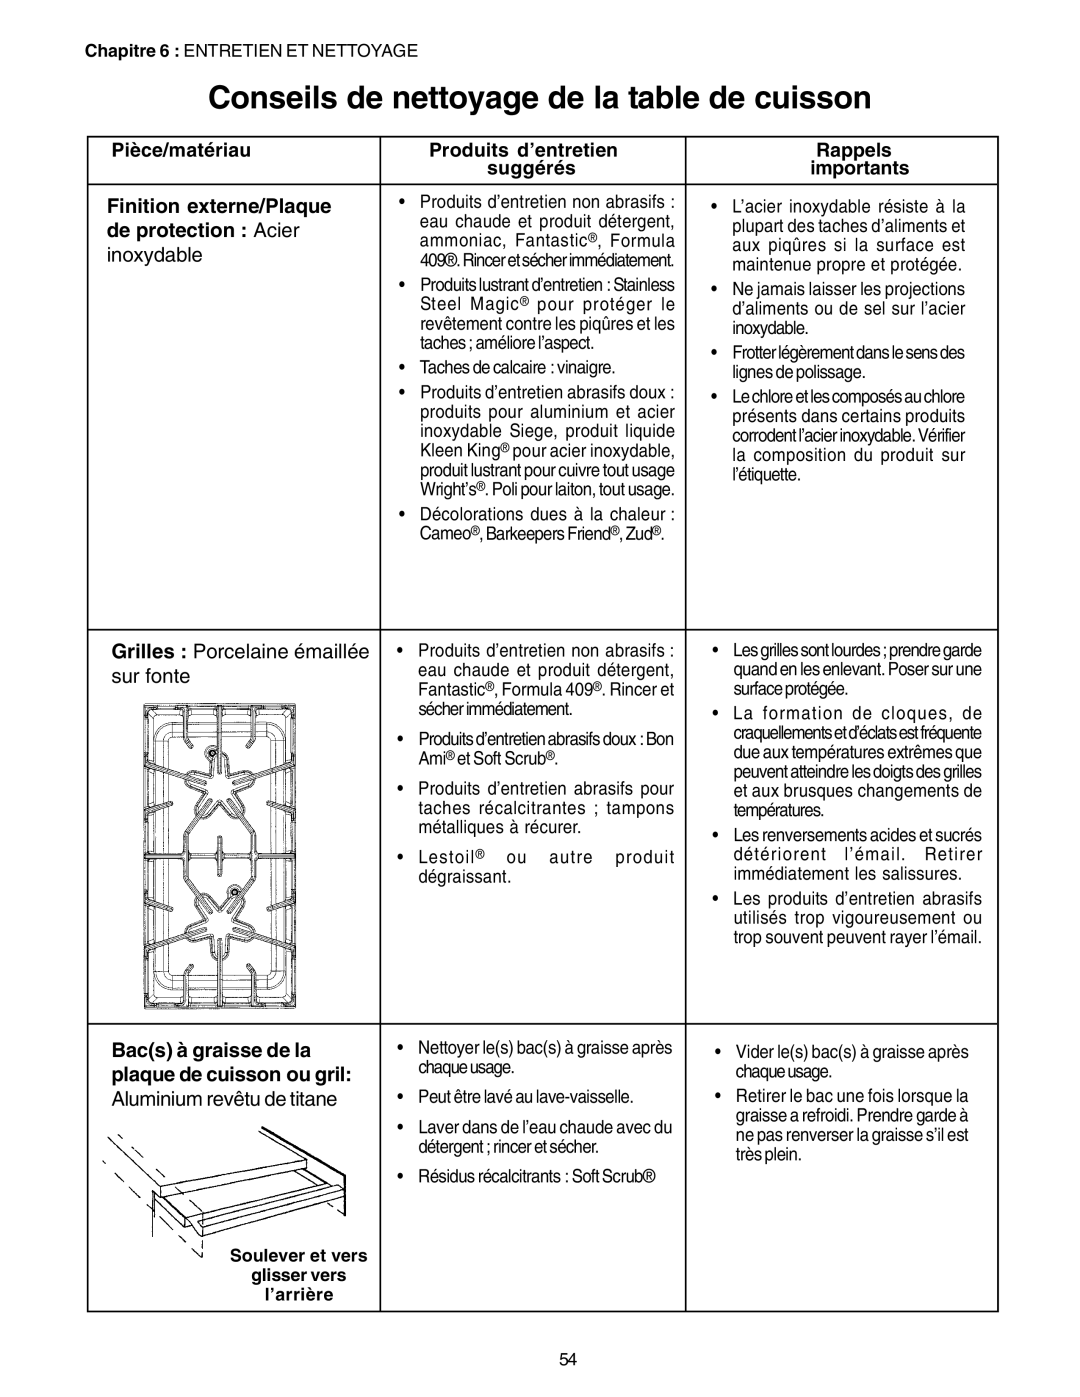 Thermador PC30 Conseils de nettoyage de la table de cuisson, Pièce/matériau, Produits d’entretien, Rappels, suggérés 